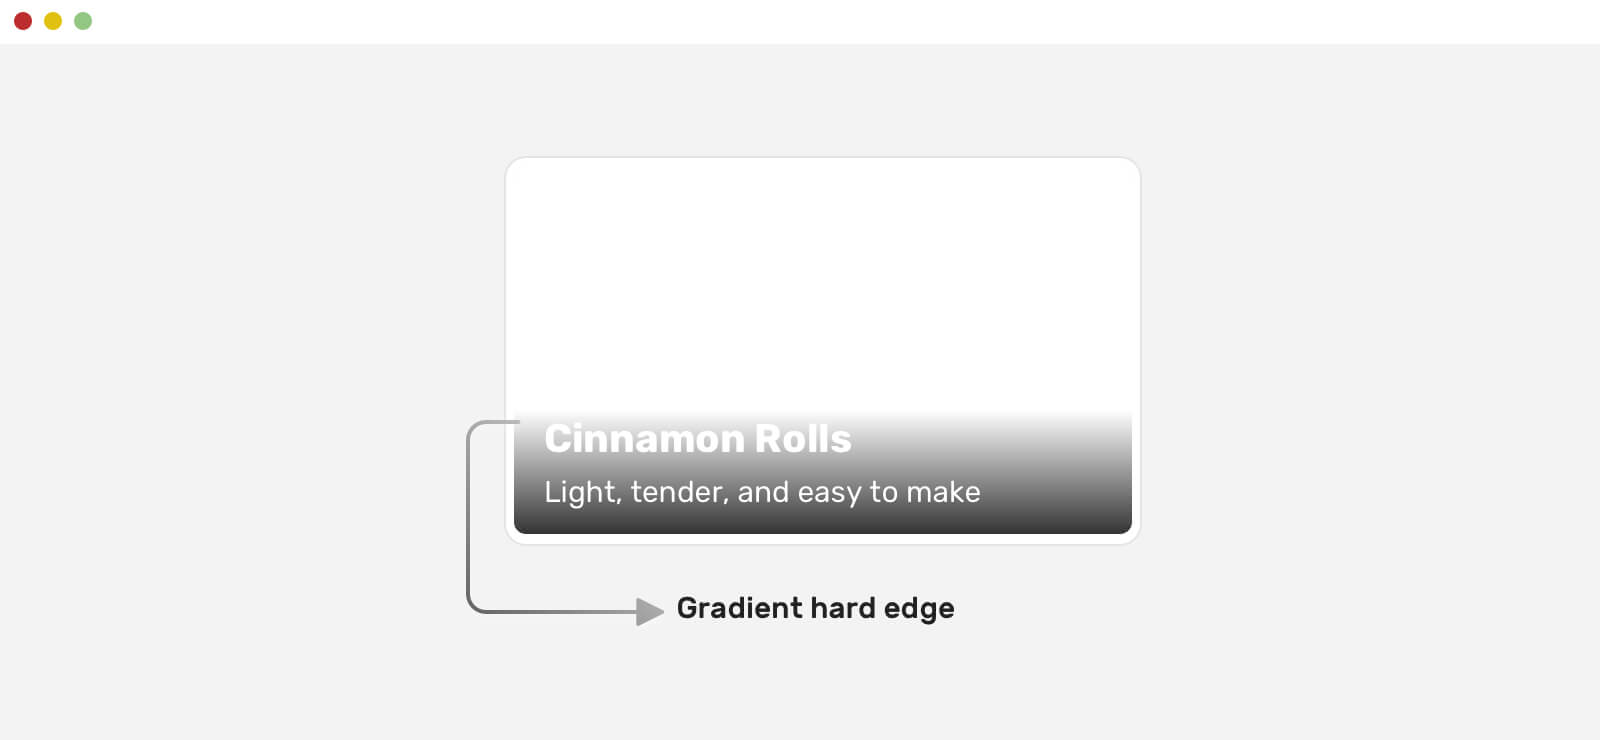 Обработка текста поверх изображений в CSS